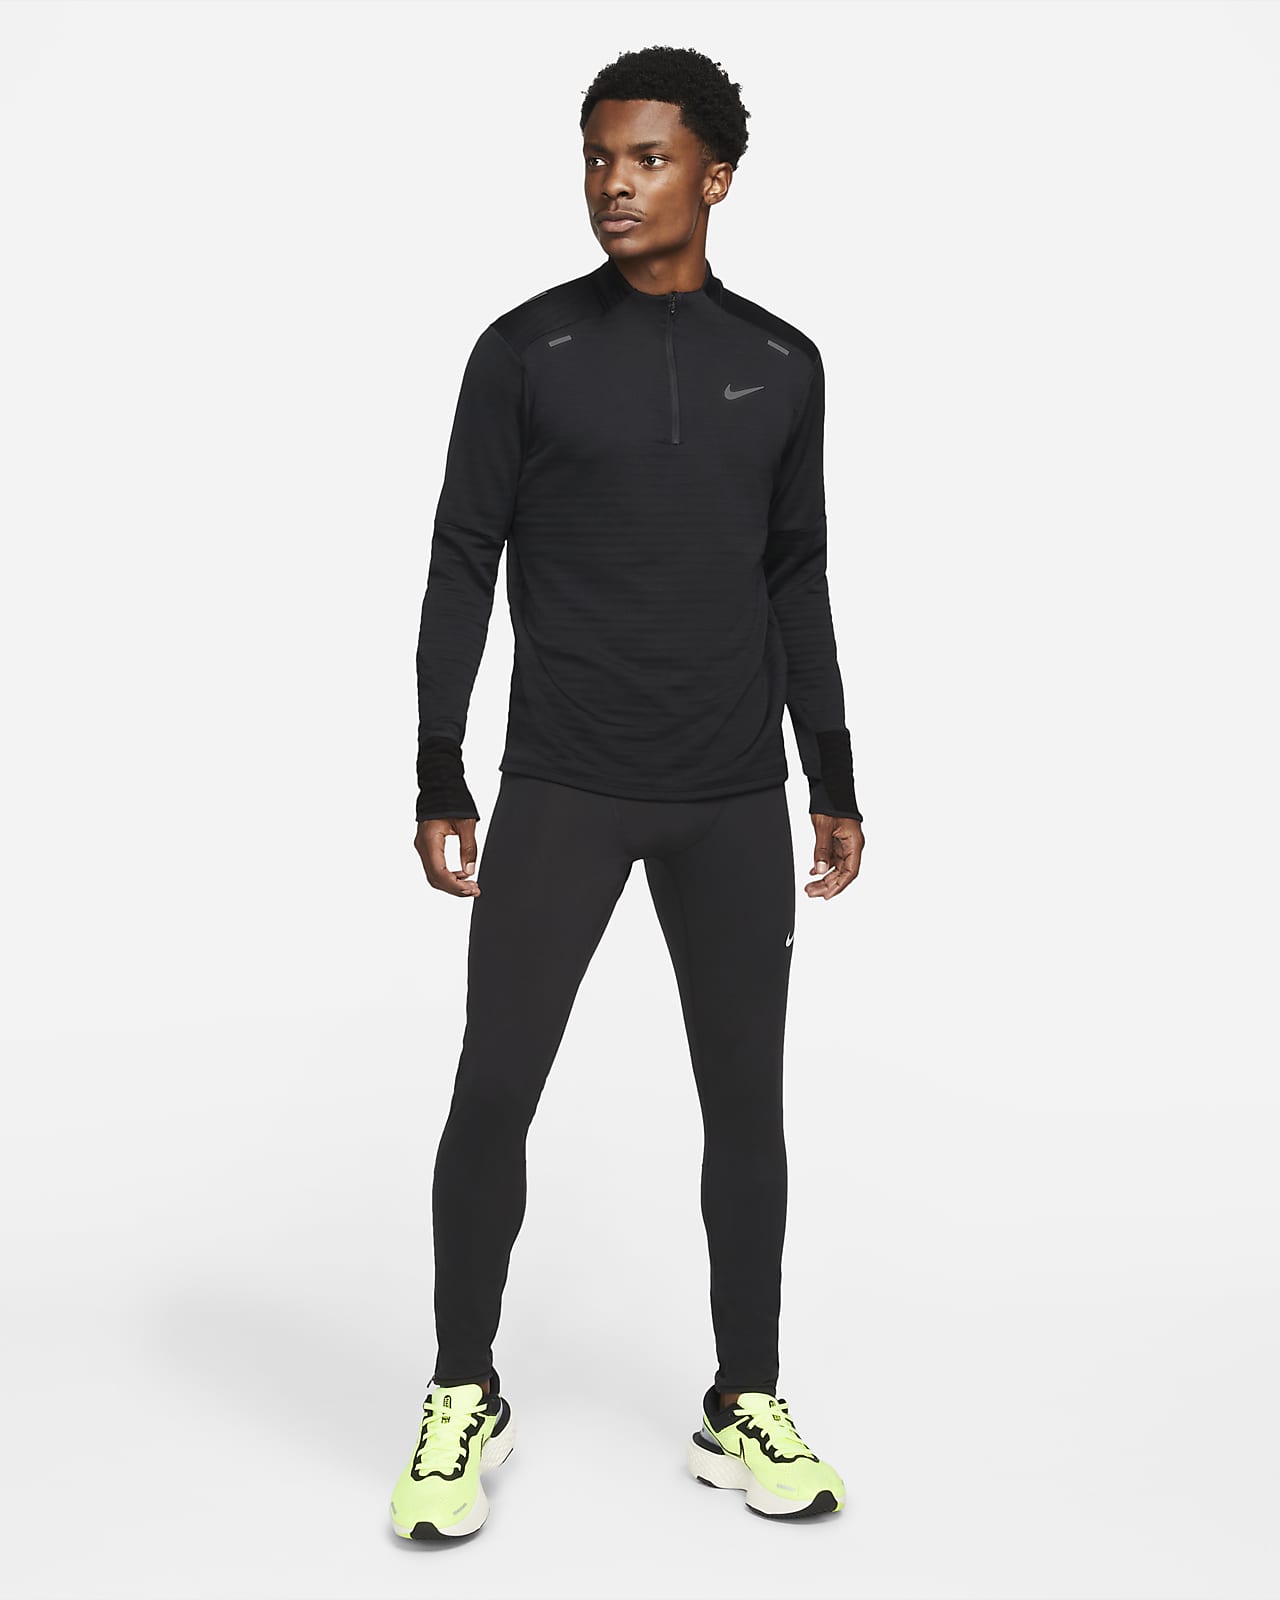 kwaadaardig Maak los intern Nike Therma-FIT Repel Element Men's 1/4-Zip Running Top. Nike.com